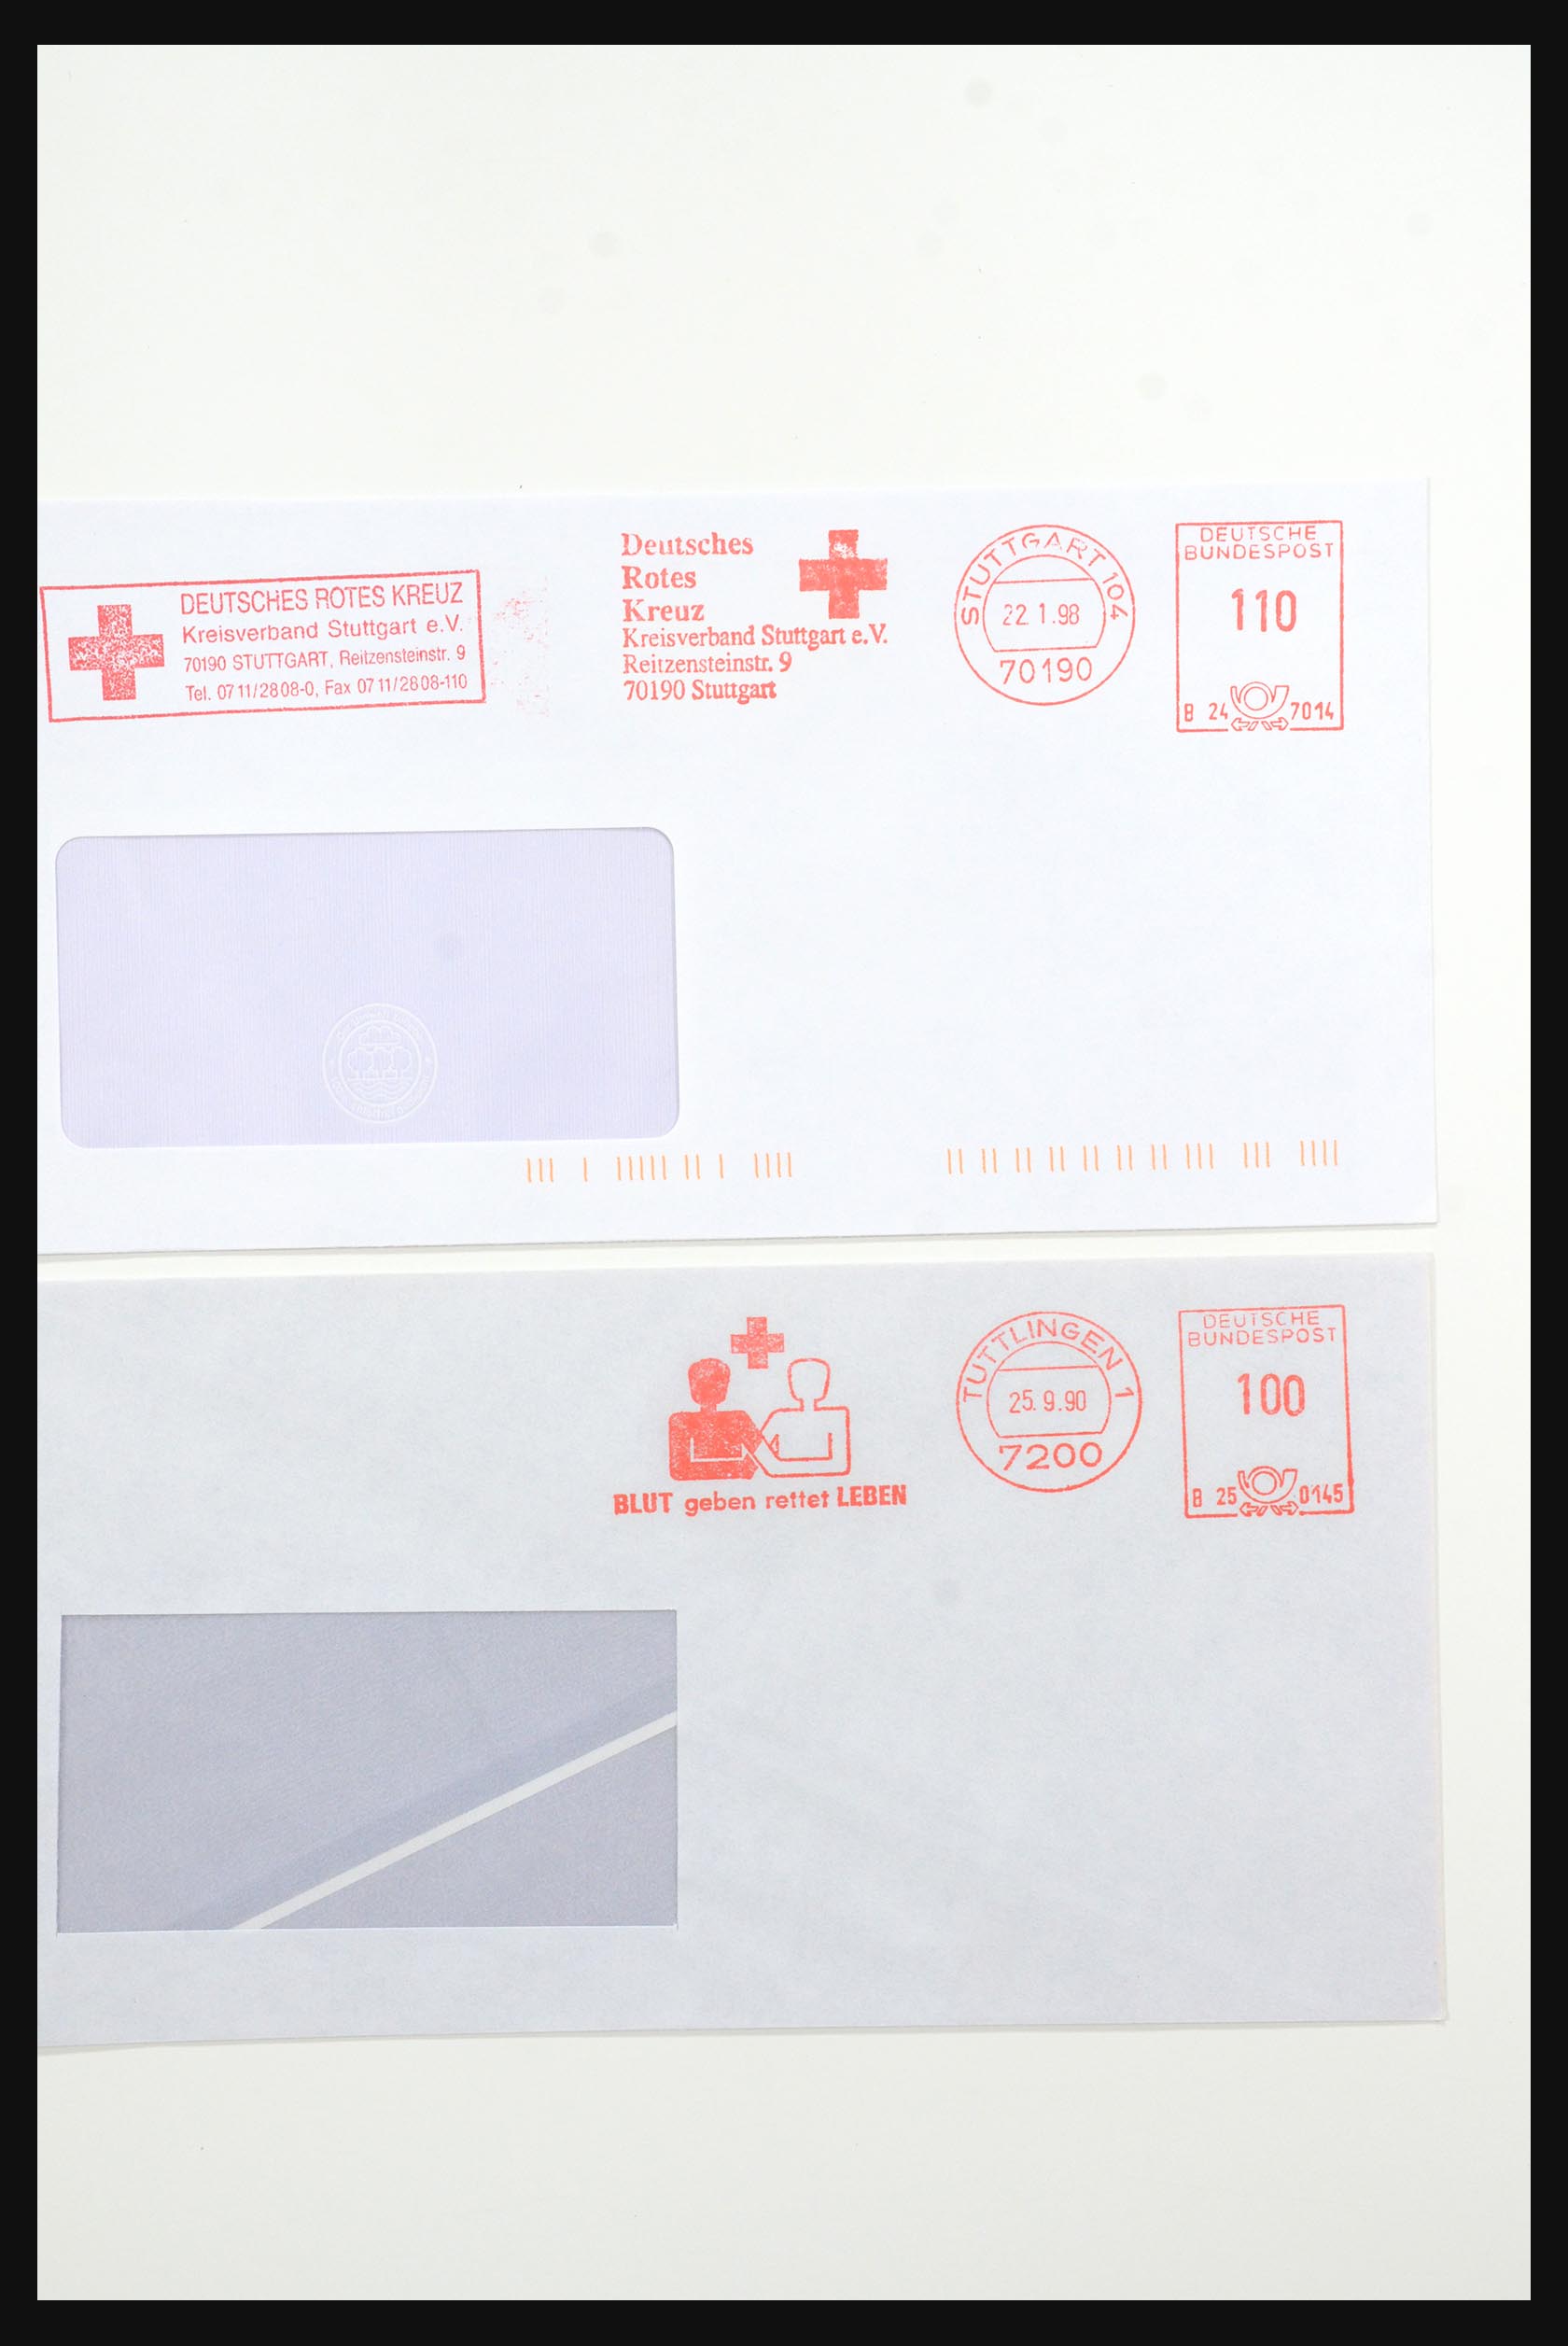 31365 1056 - 31365 Rode kruis brieven 1905-1975.